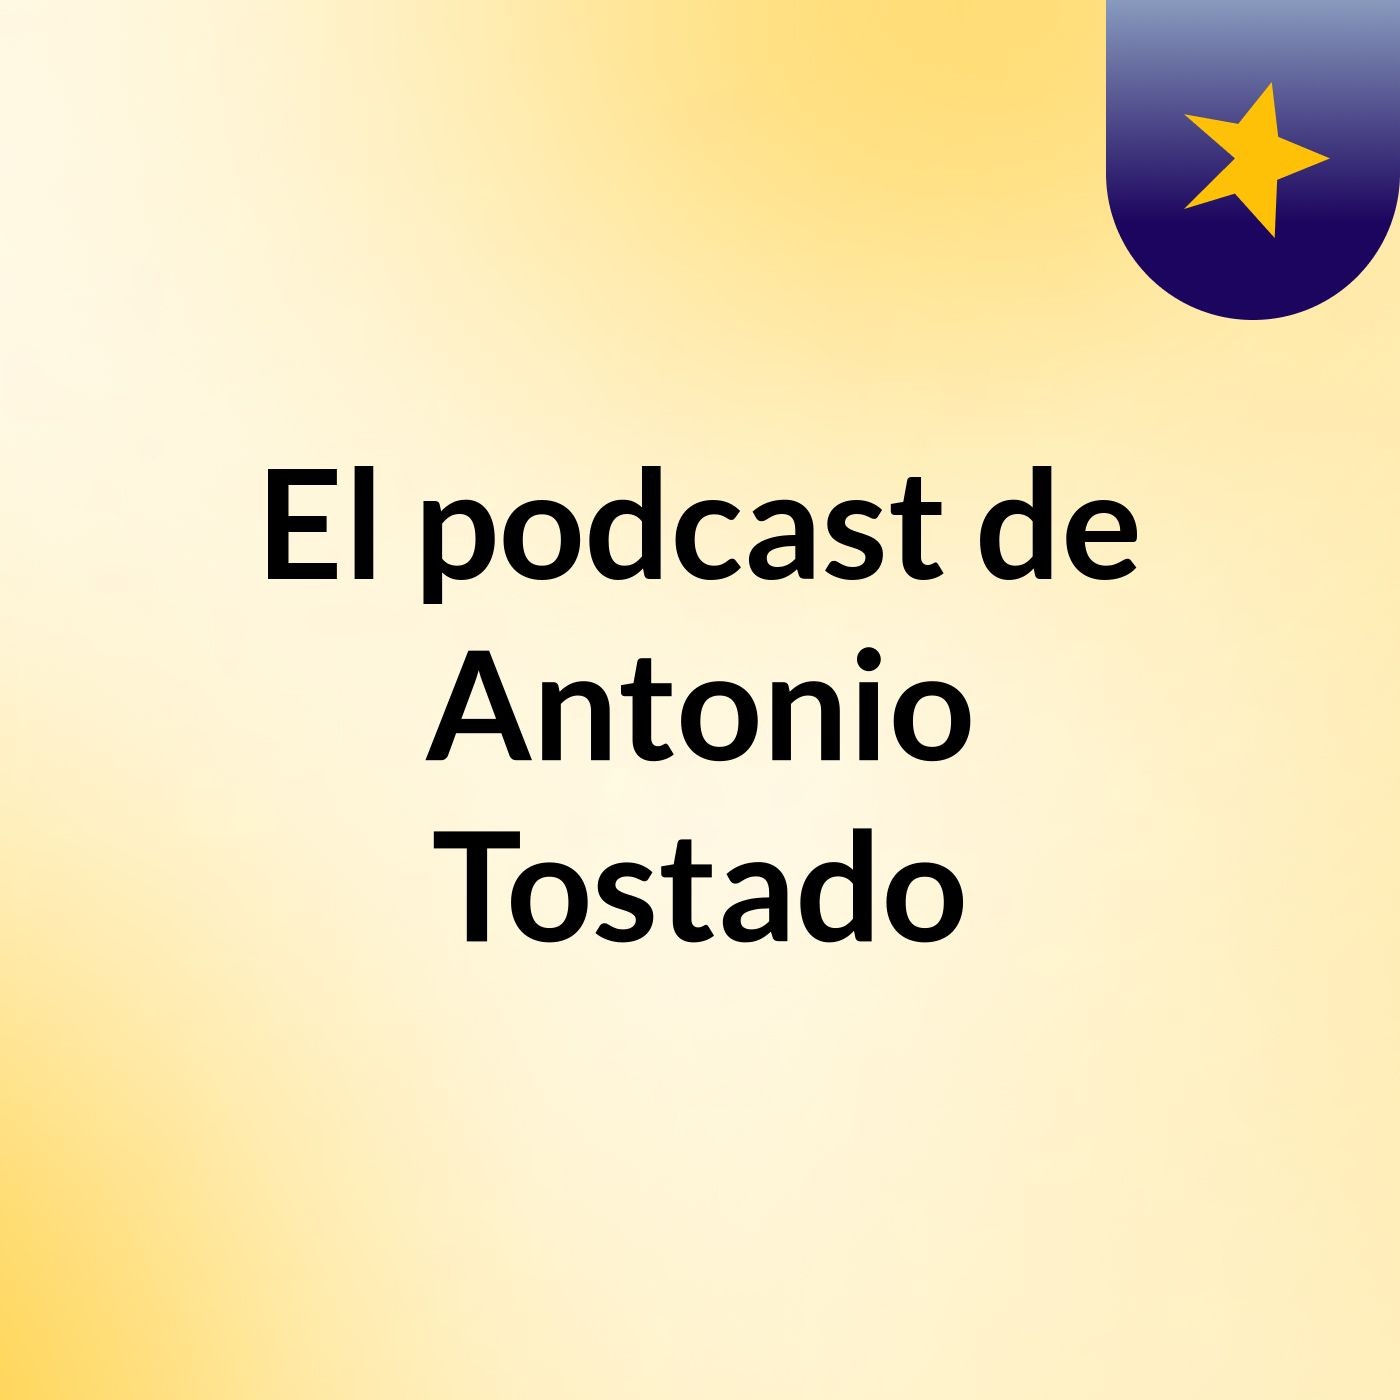 Episodio 4 - El podcast de Antonio Tostado